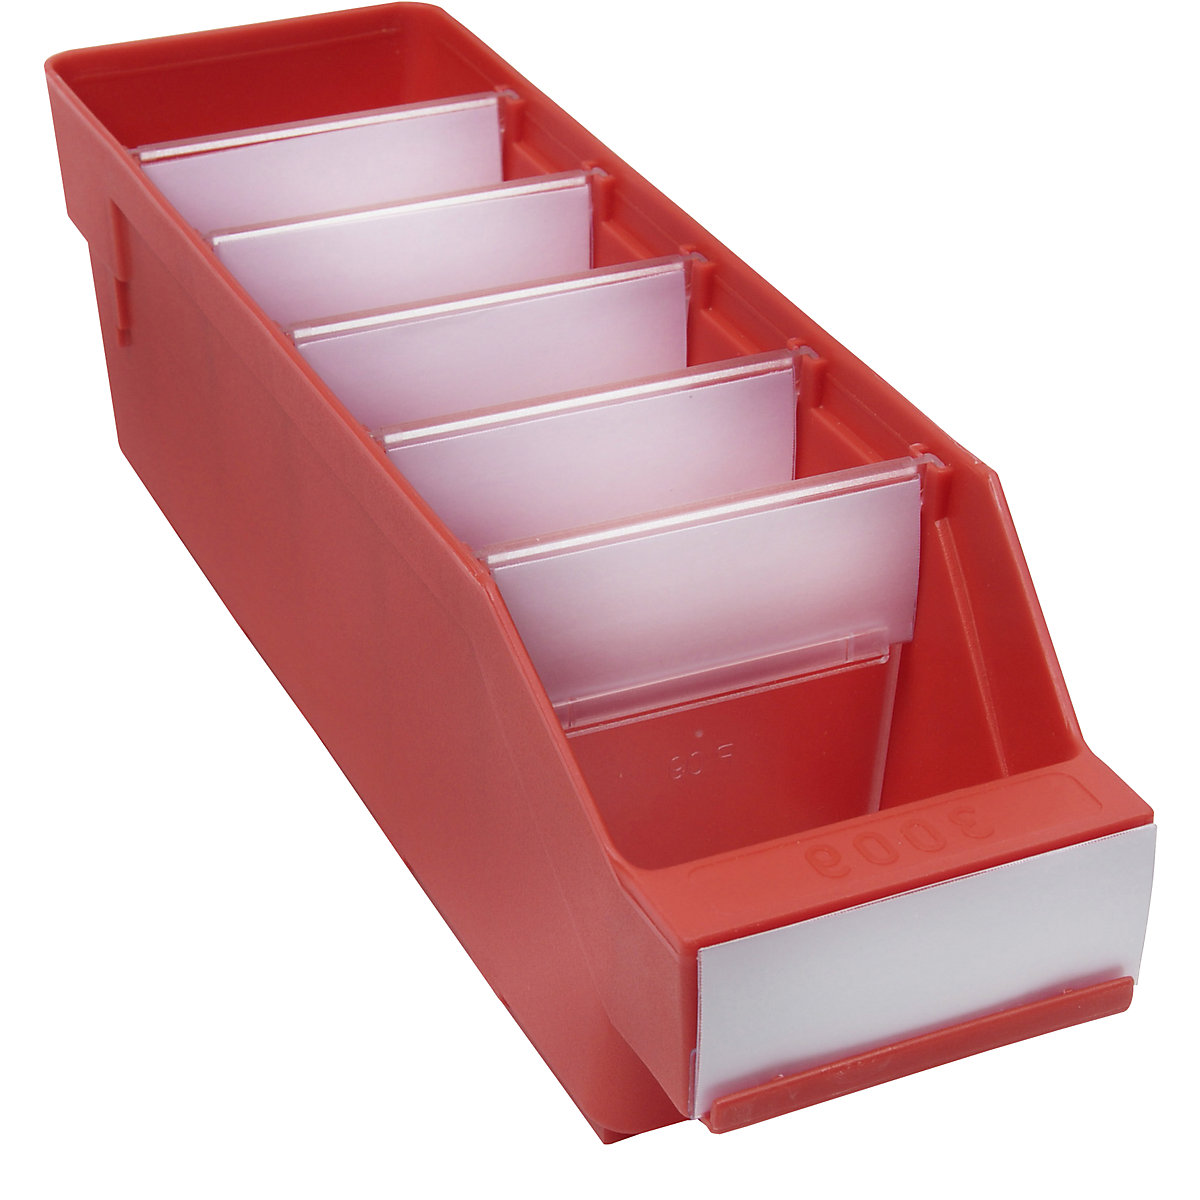 Regalkasten aus hochschlagfestem Polypropylen STEMO, rot, LxBxH 300 x 90 x 95 mm, VE 40 Stk-12